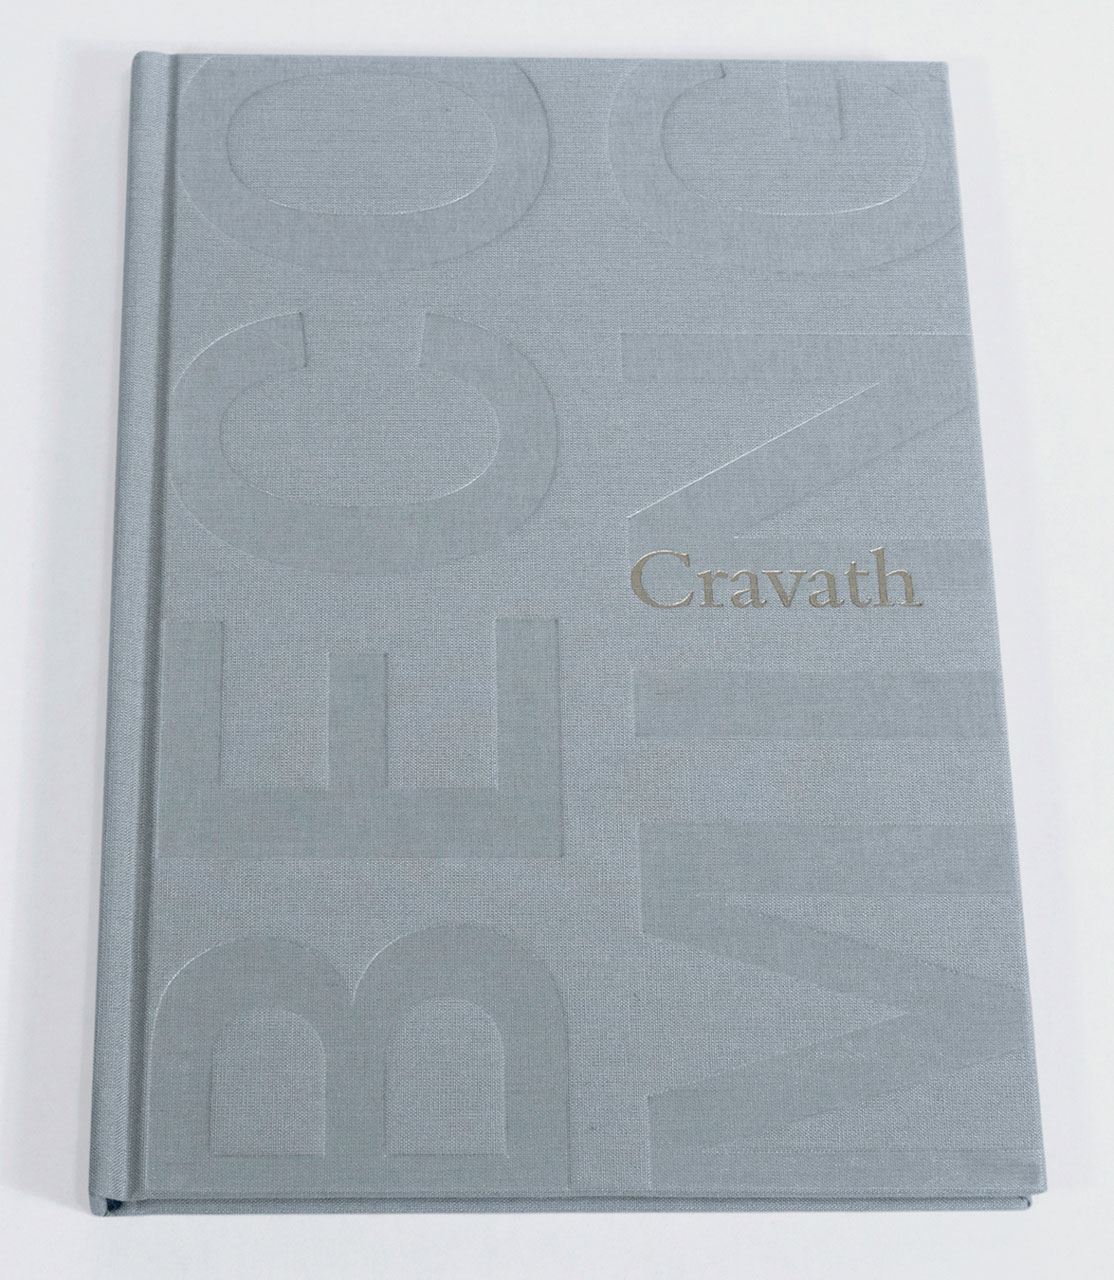 BICENTENNIAL BOOK FOR CRAVATH